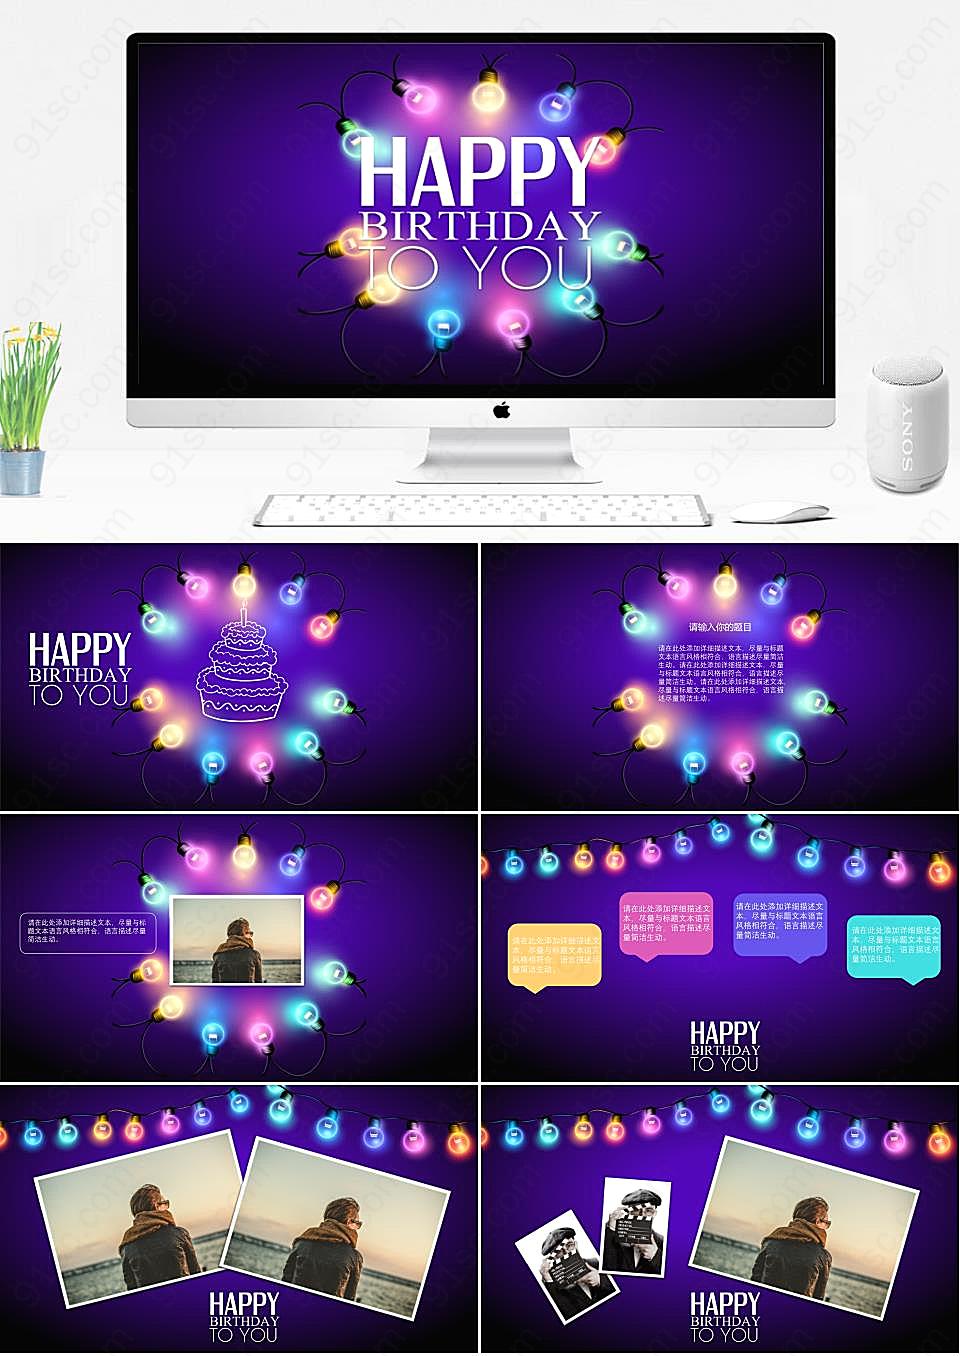 紫色生日快乐？这里有一款精美的电子相册PPT模板供你下载节日庆典